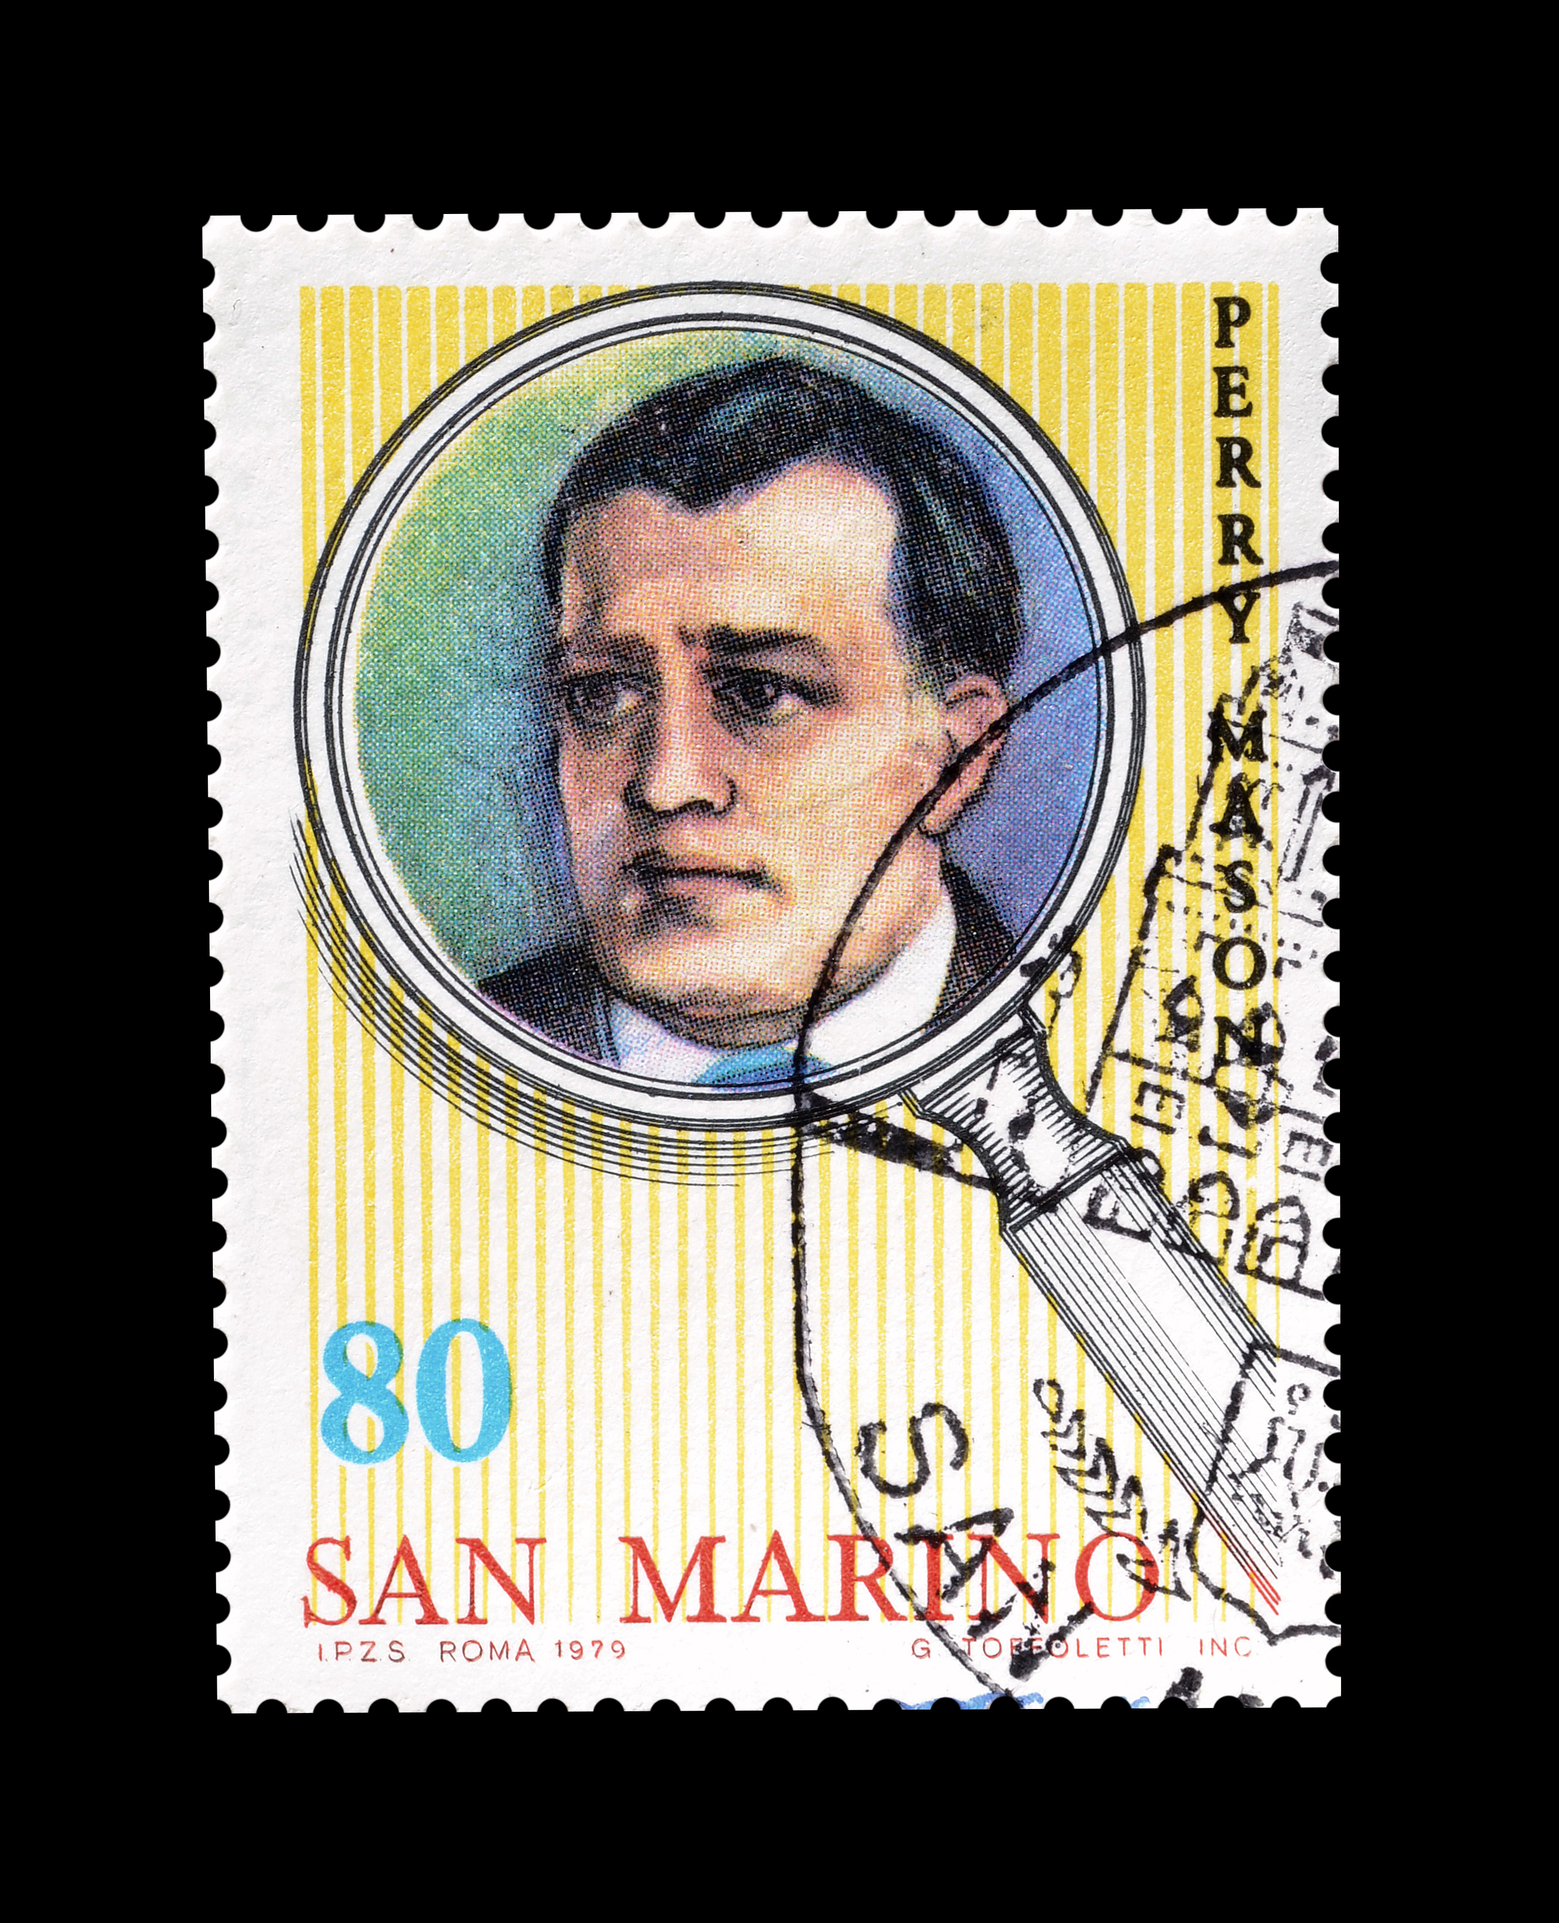 Timbru poștal, tipărit în San Marino, care îl înfățișează pe detectivul Perry Mason, circa 1979 (sursă foto: dreamstime)